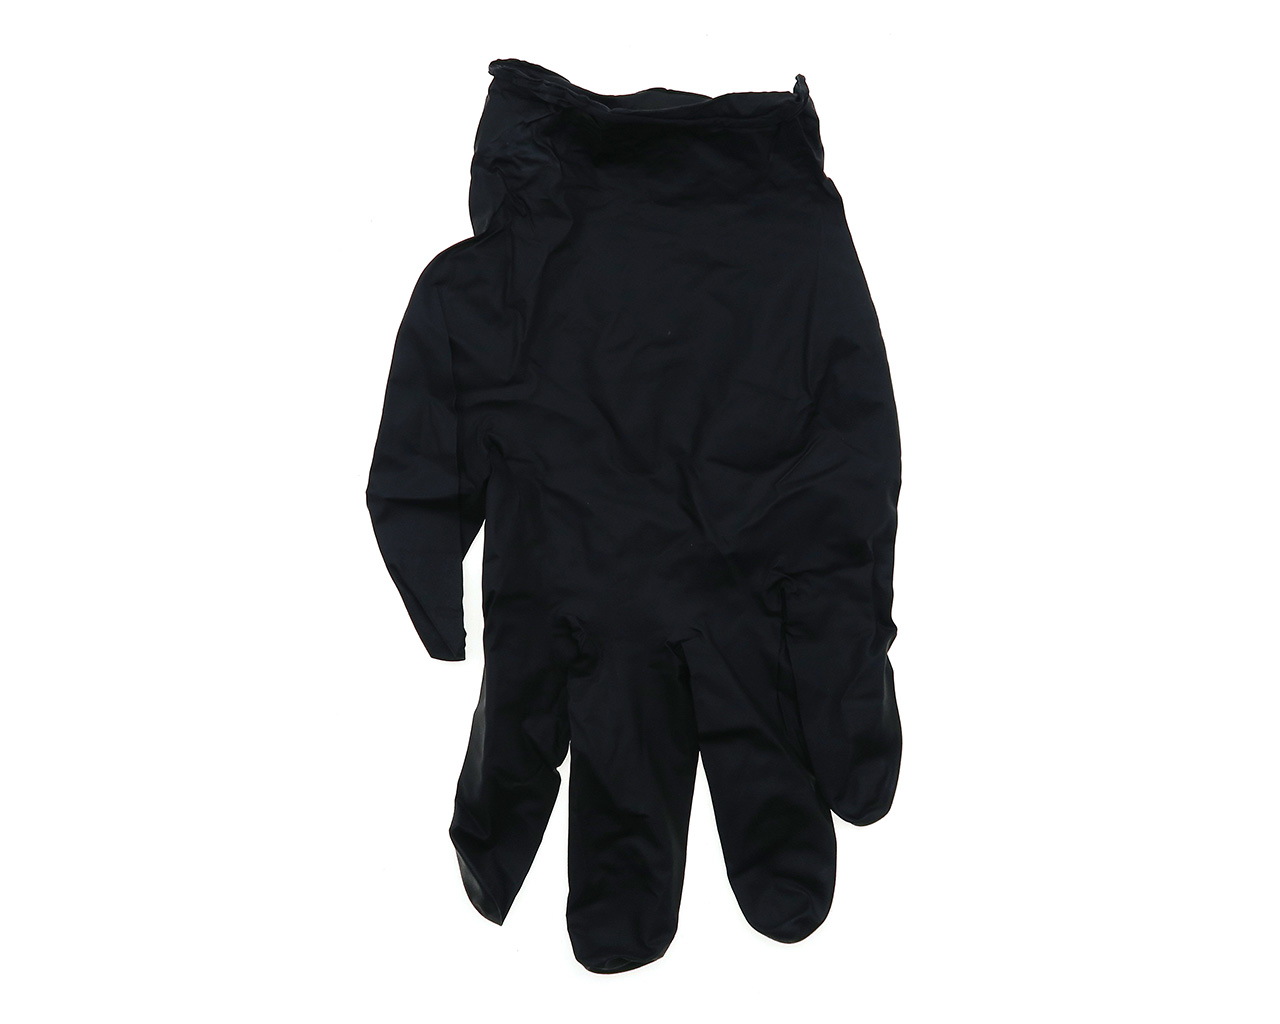 Pro Smoke Black Nitrile Gloves 100 Pack, , hi-res image number null